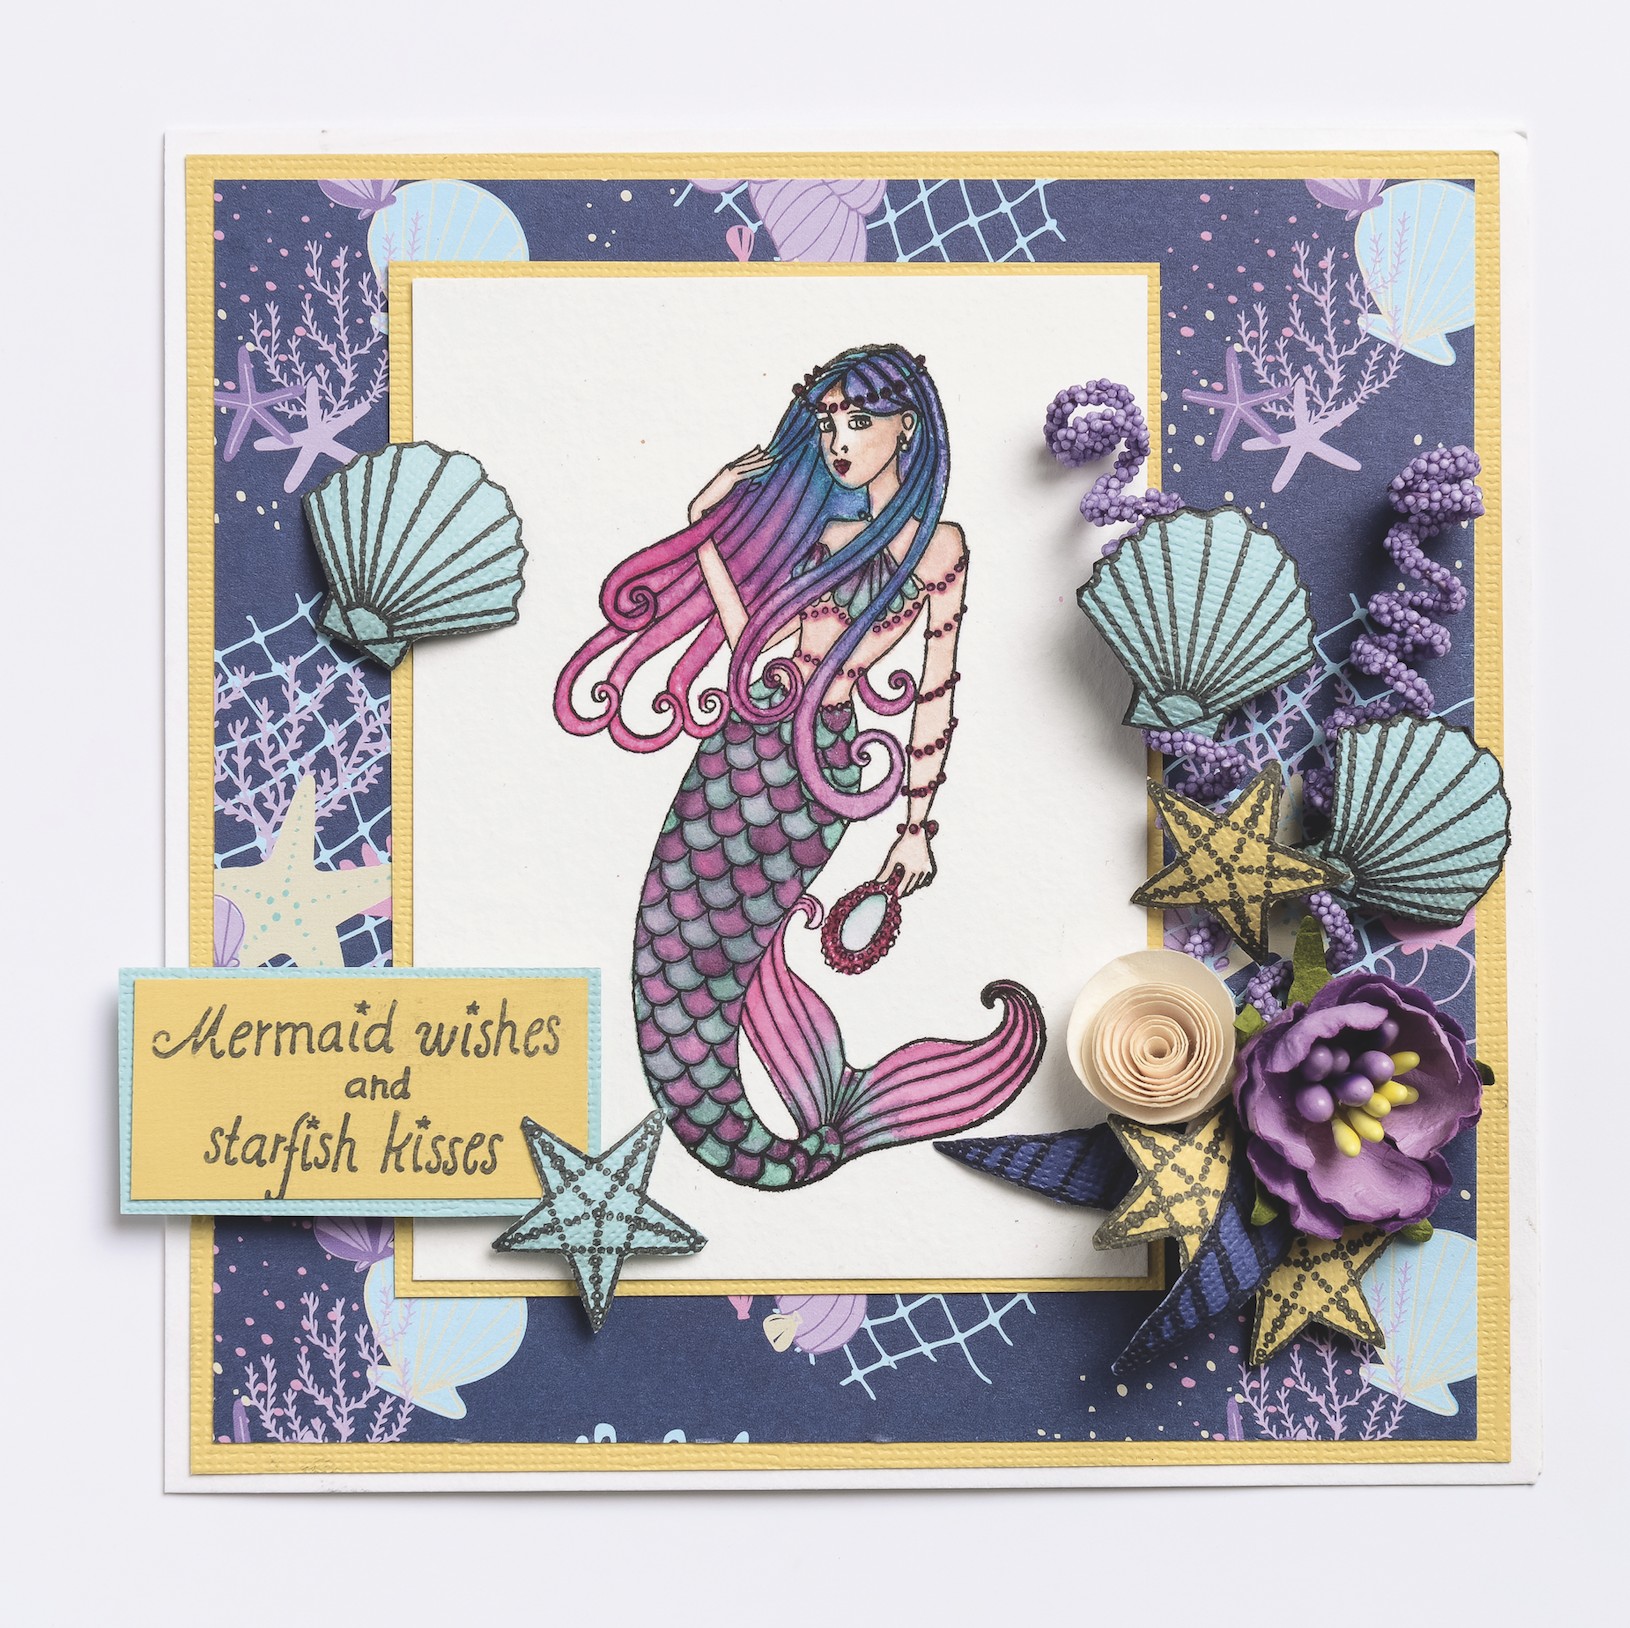 Mermaid Papercraft Mermaid Stamp by Yvette Jordan Free with issue 171 July 2017 Of